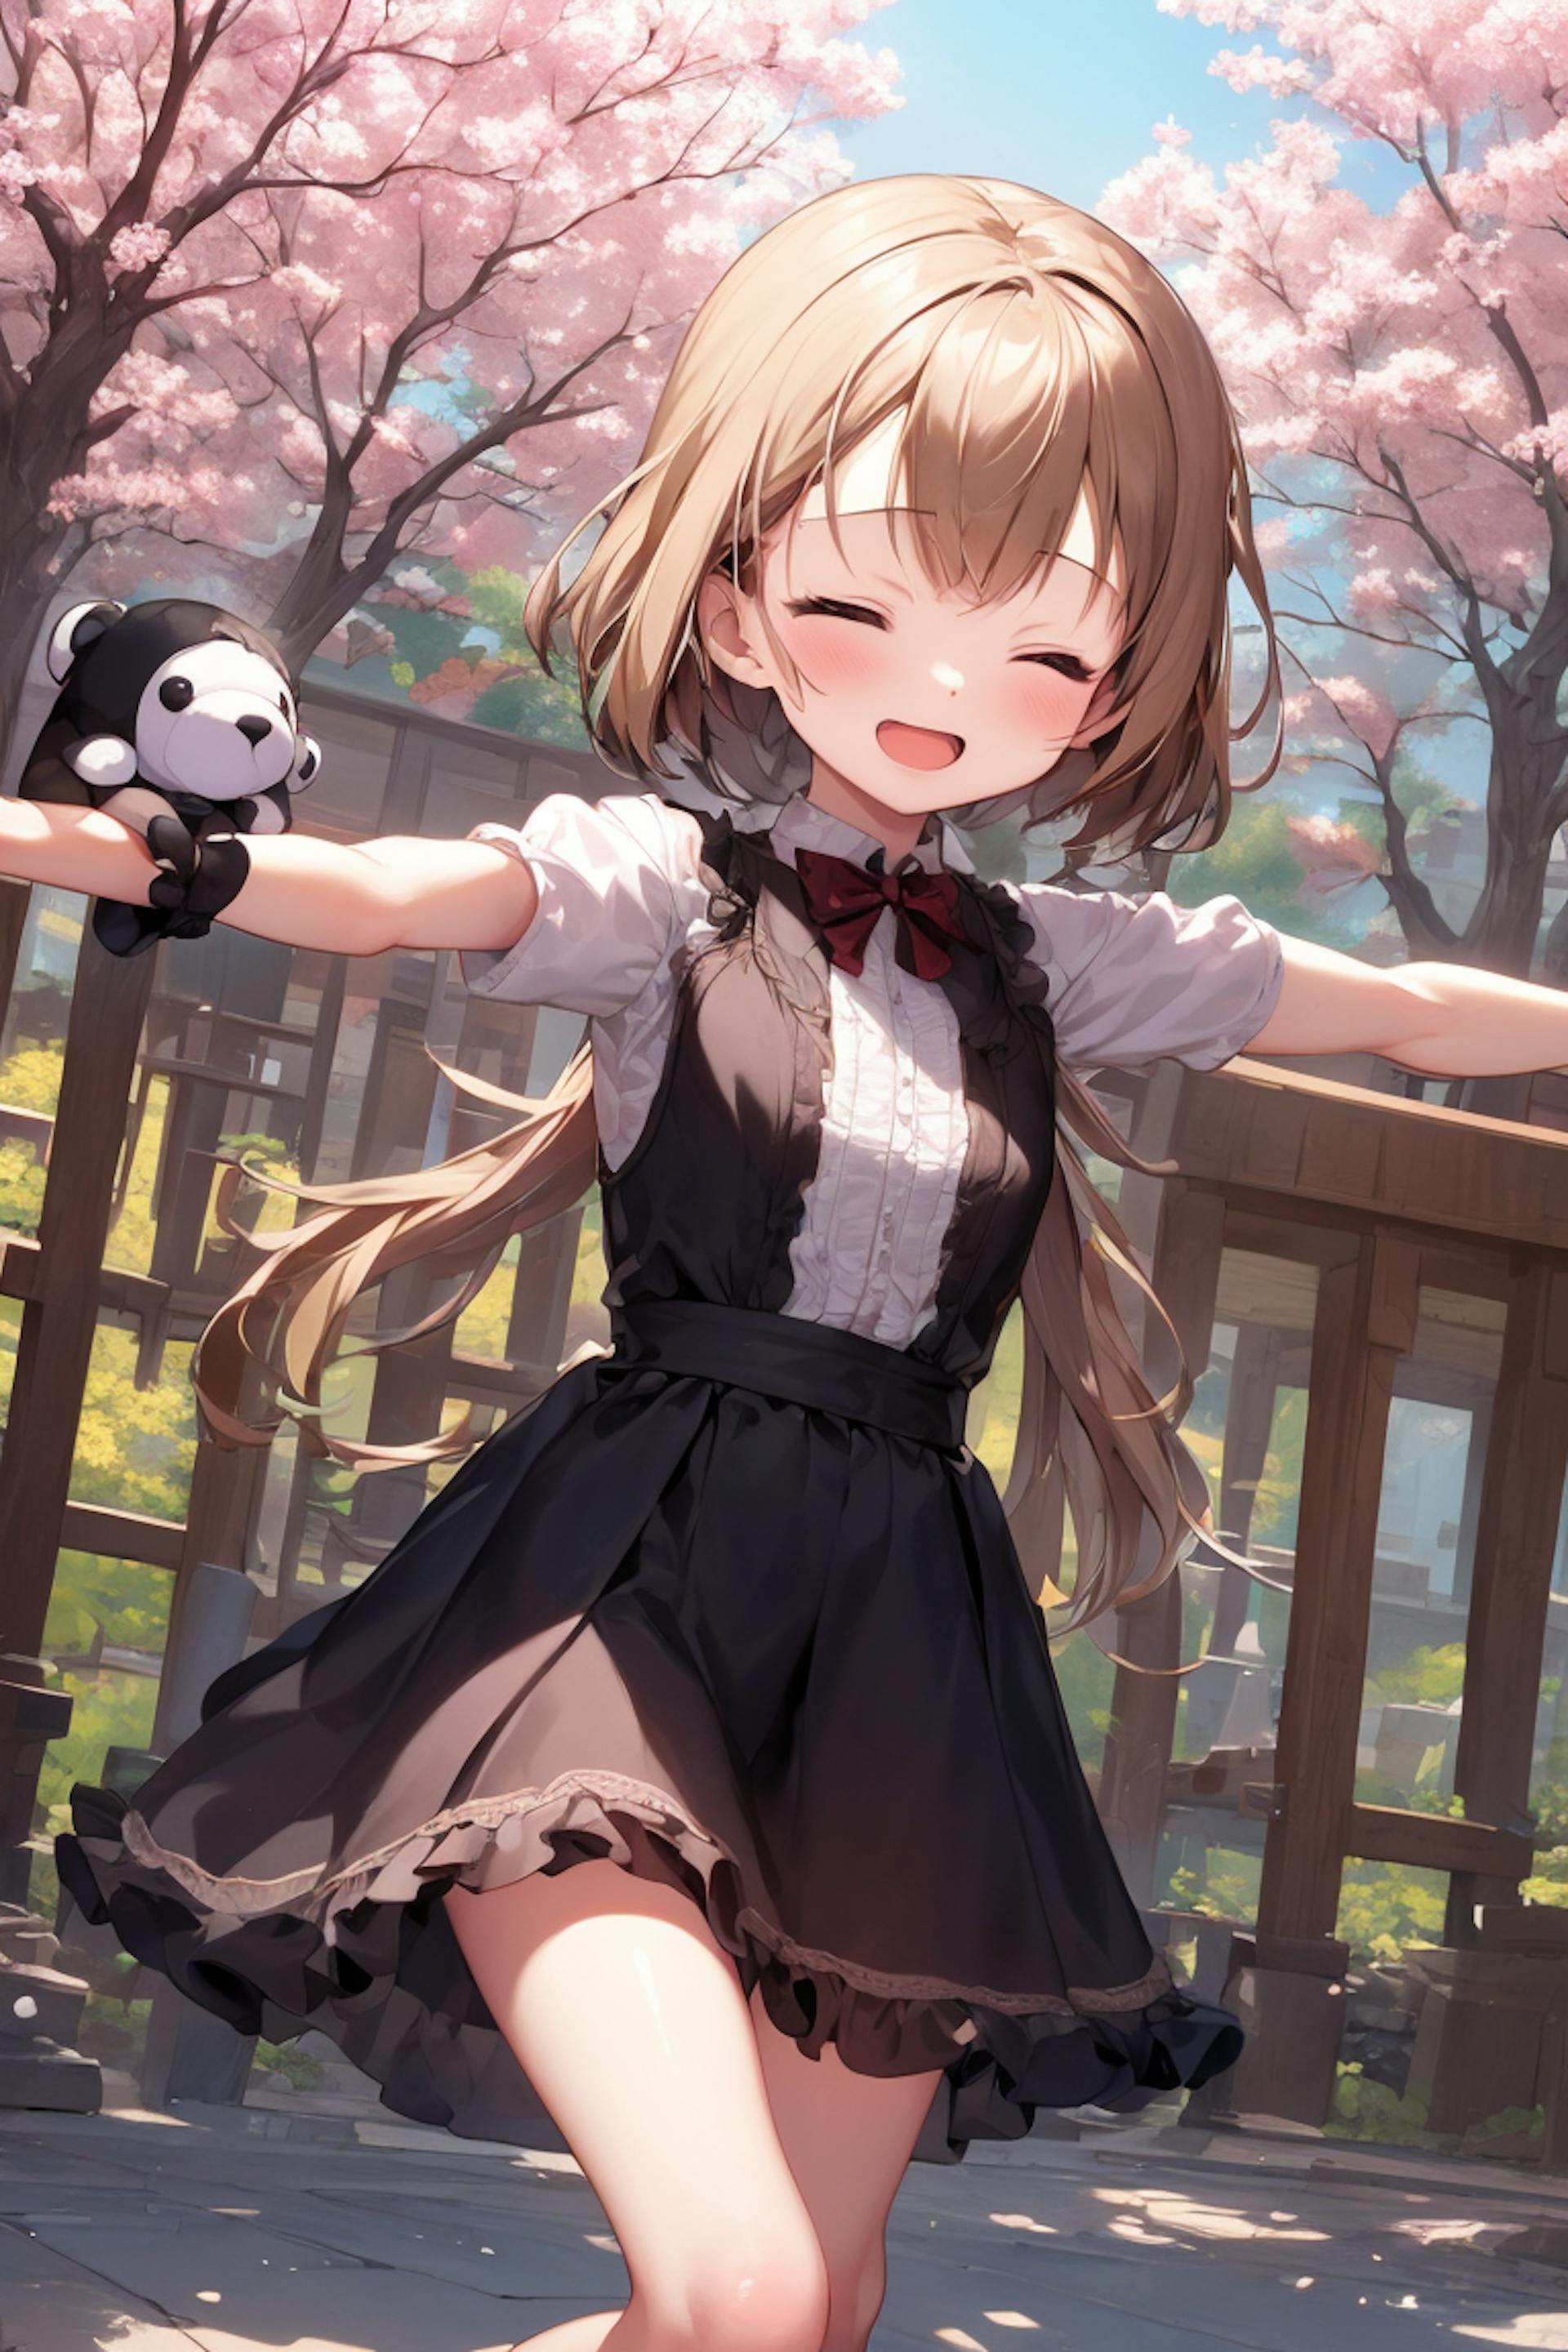 Poster girl on the Anime Kawaii Diffusion Model Card